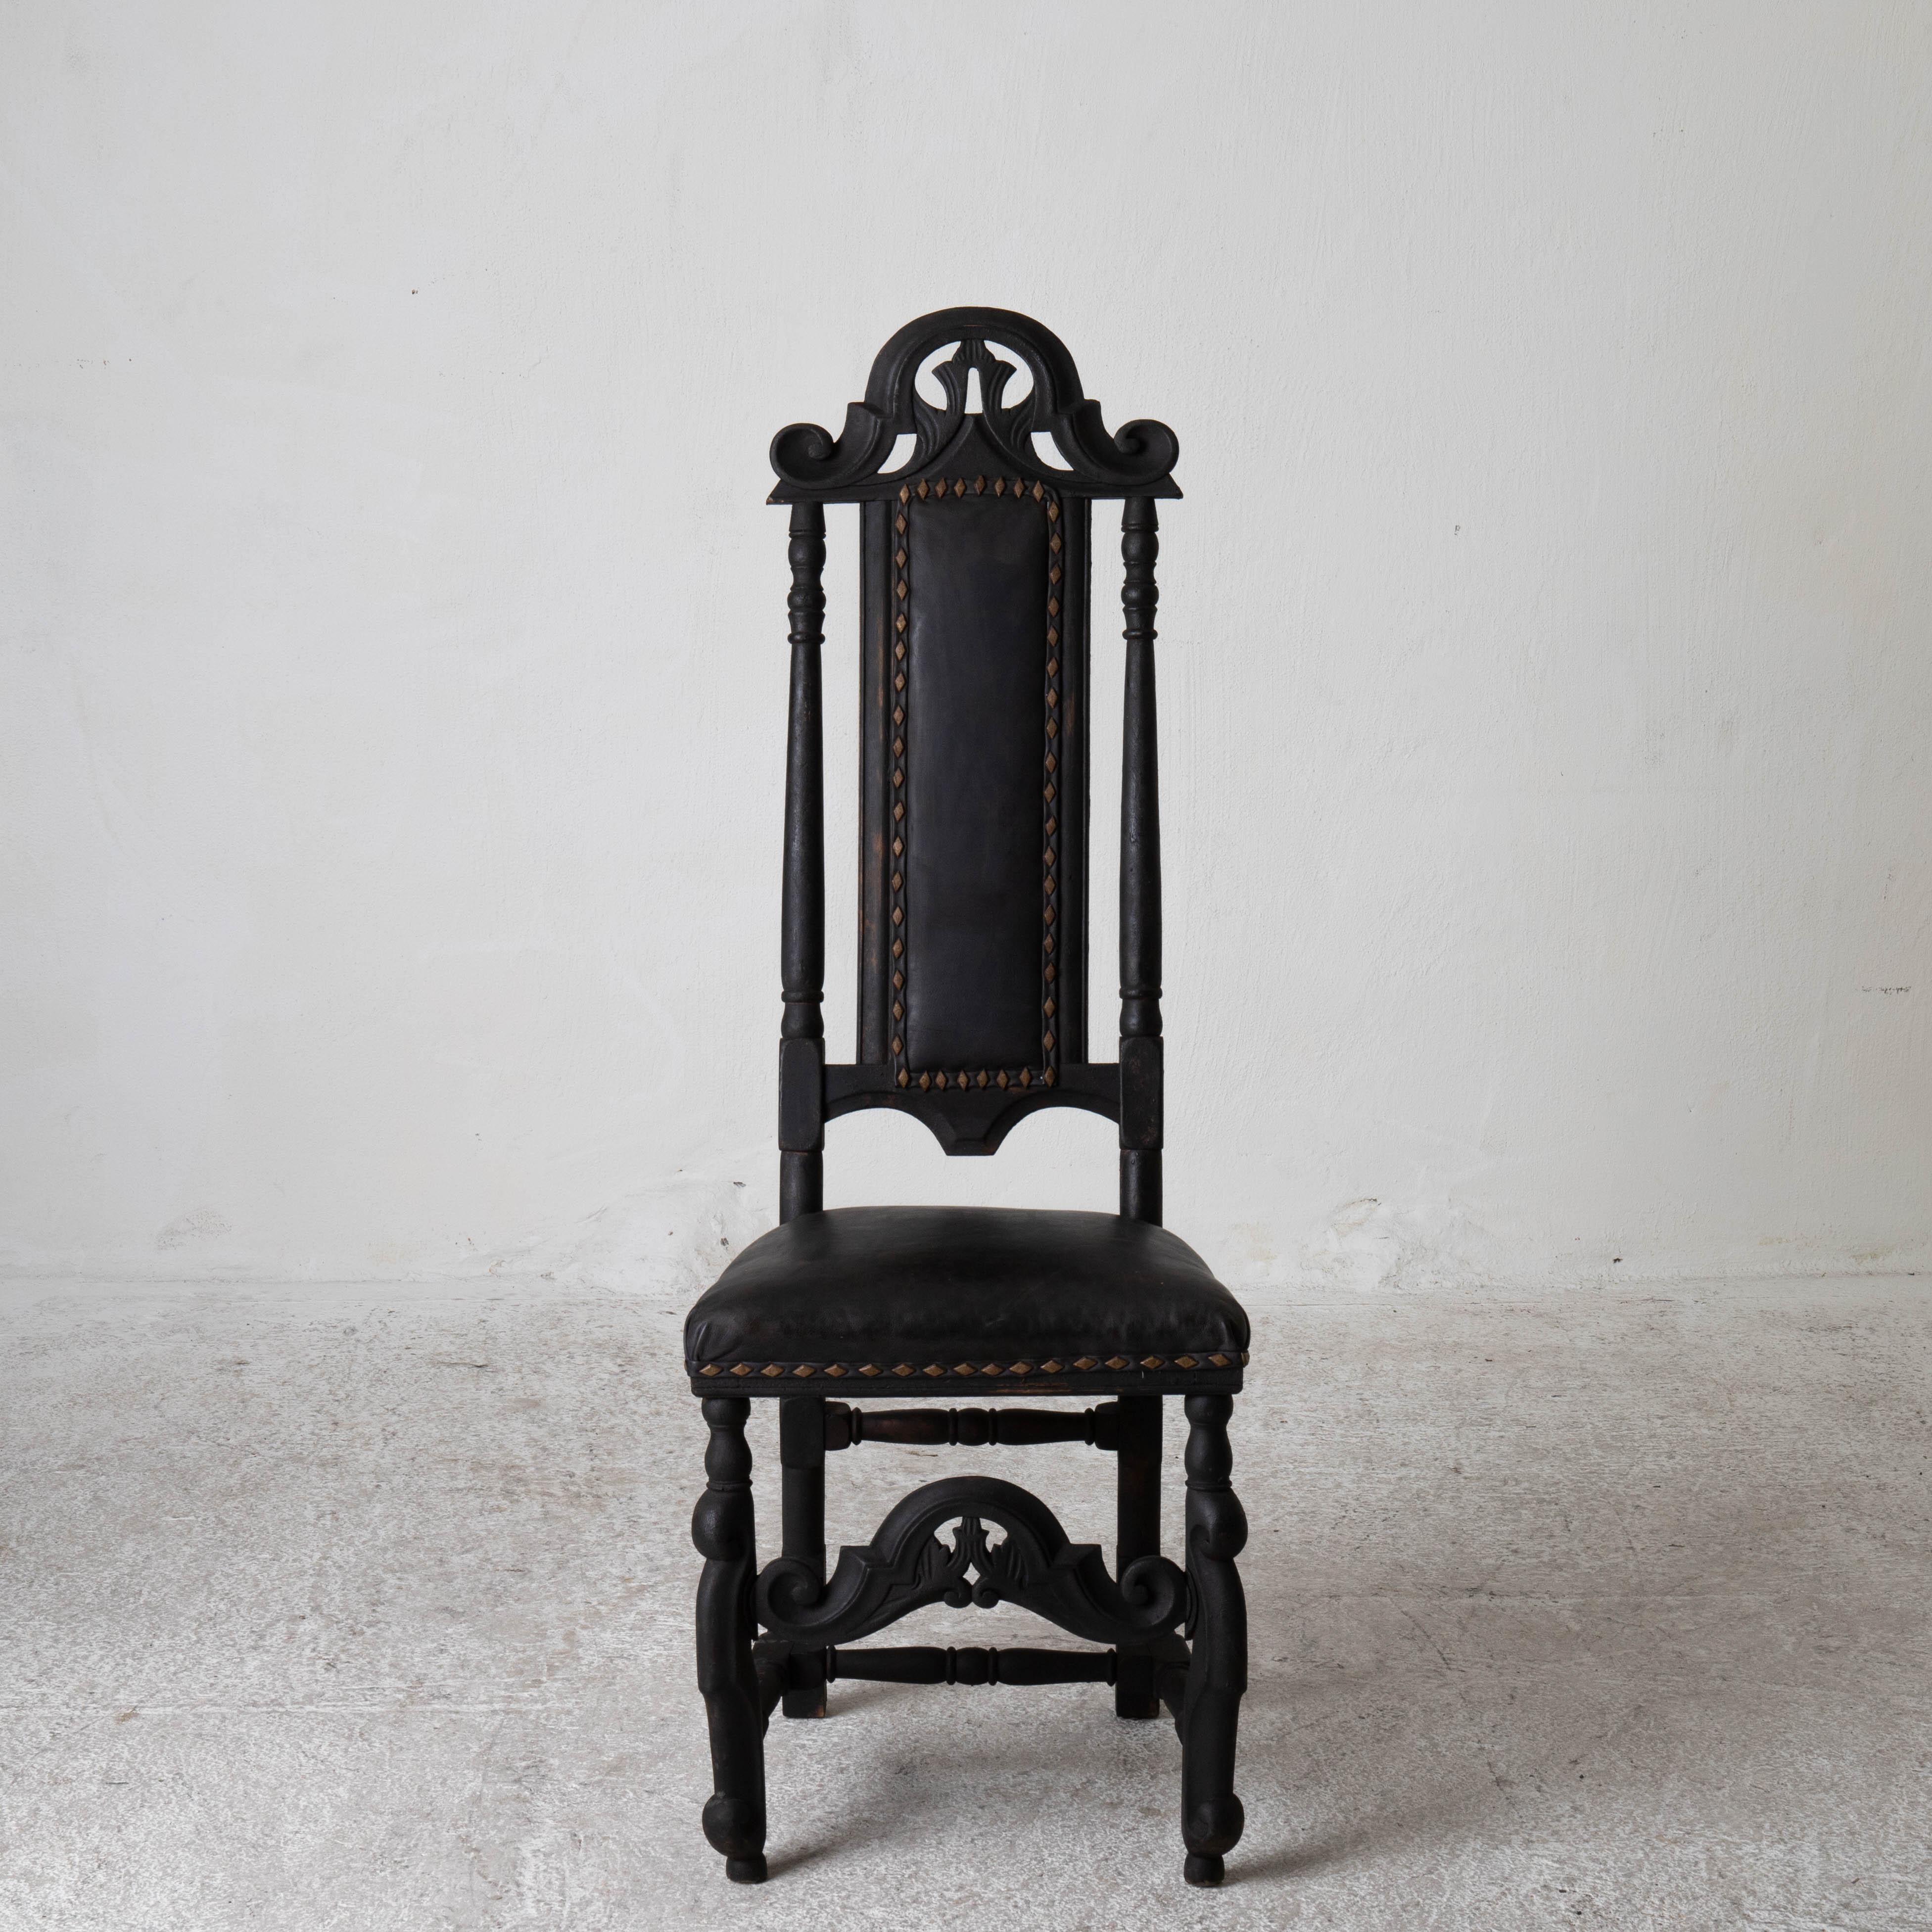 Stühle Montiert Barock Stil Satz von 10 Esszimmerstühle Schwarz Schweden. Ein Satz von 10 Esszimmerstühlen im Barockstil aus dem 18-19 Jahrhundert. Neu lackiert in unserem Laserow Black mit diagonal geformten Nagelköpfen.